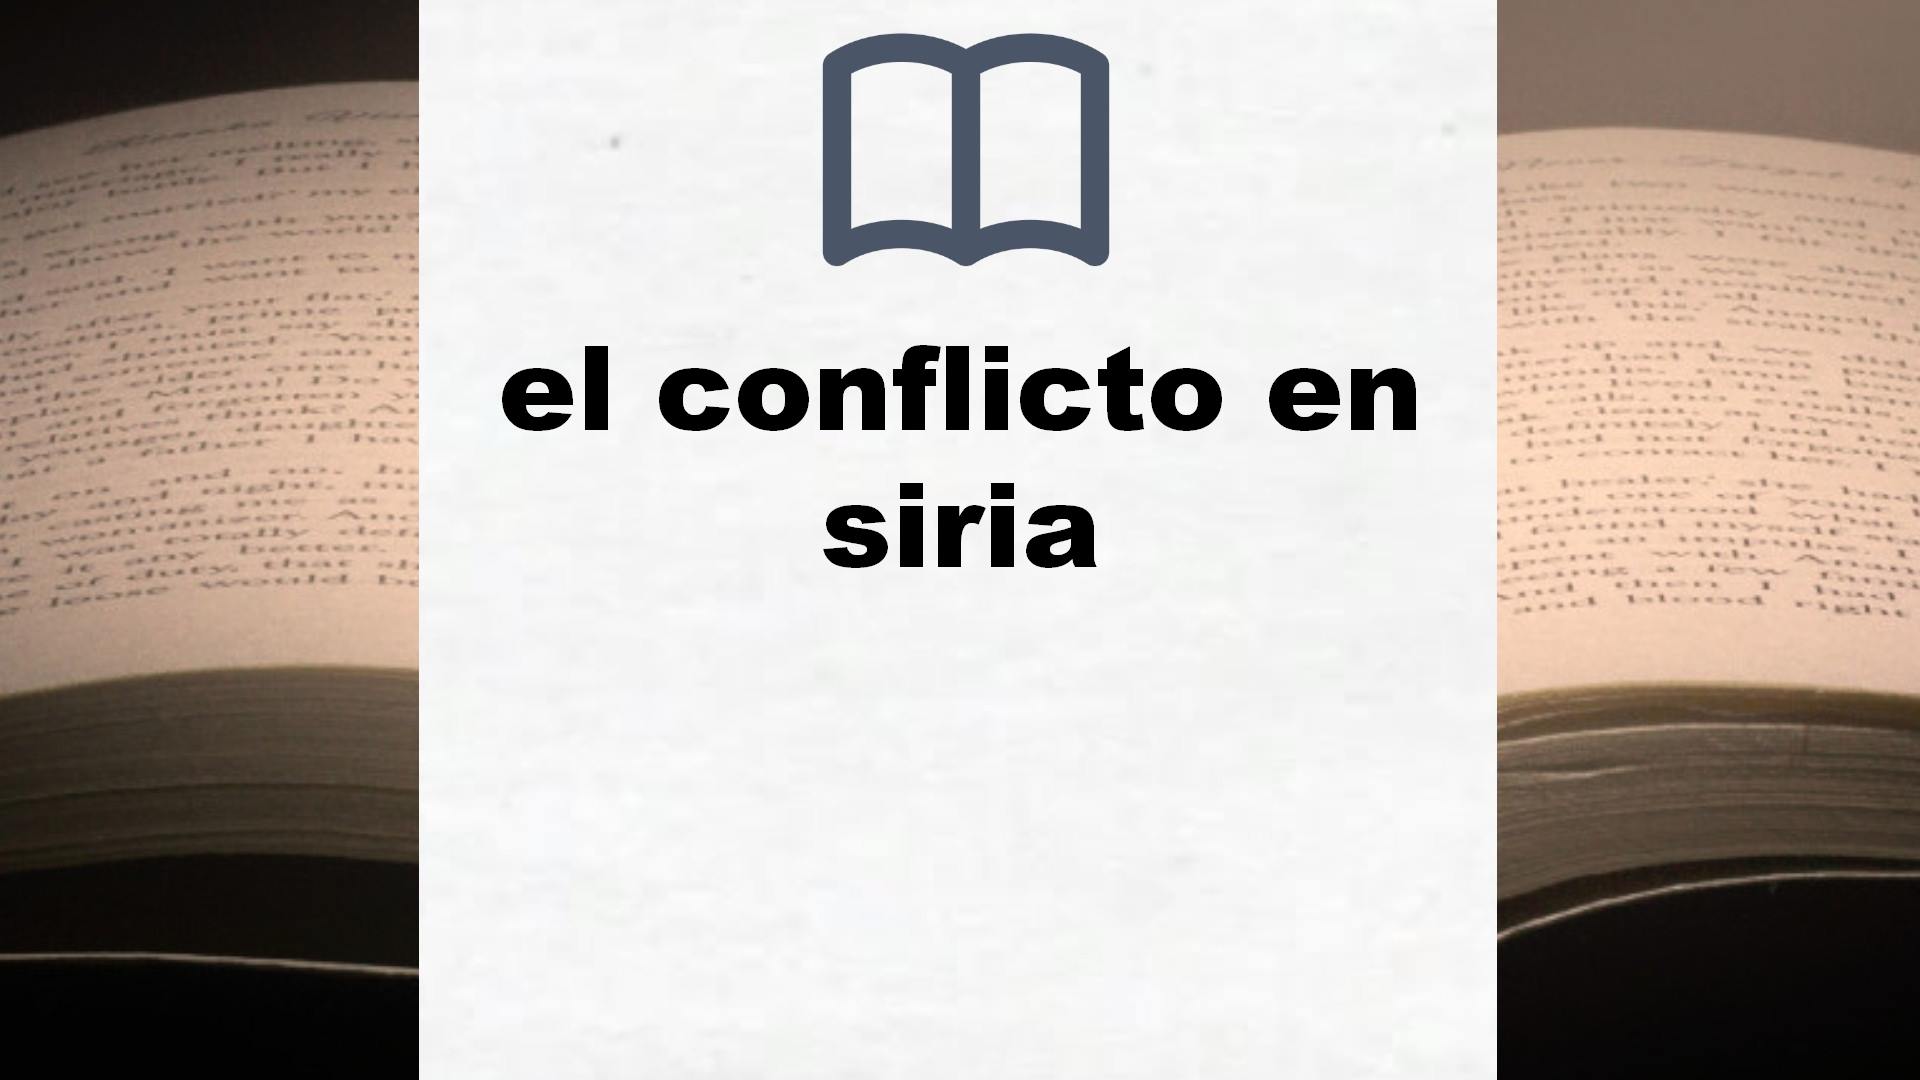 Libros sobre el conflicto en siria